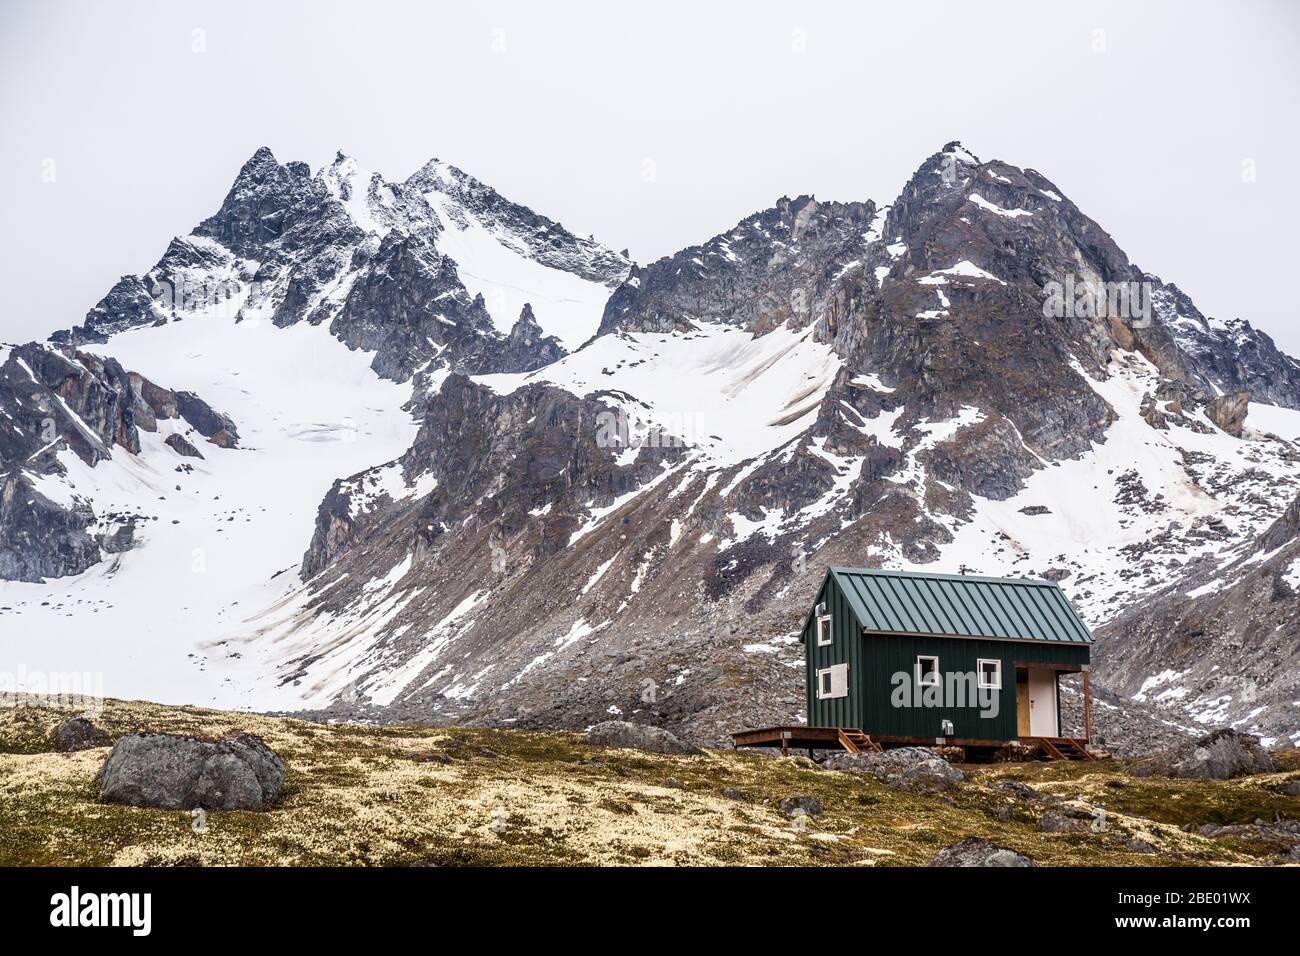 Un piccolo edificio verde nella natura selvaggia dell'Alaska offre rifugio agli sciatori e agli escursionisti del Talkeetna Mountain Range. Foto Stock